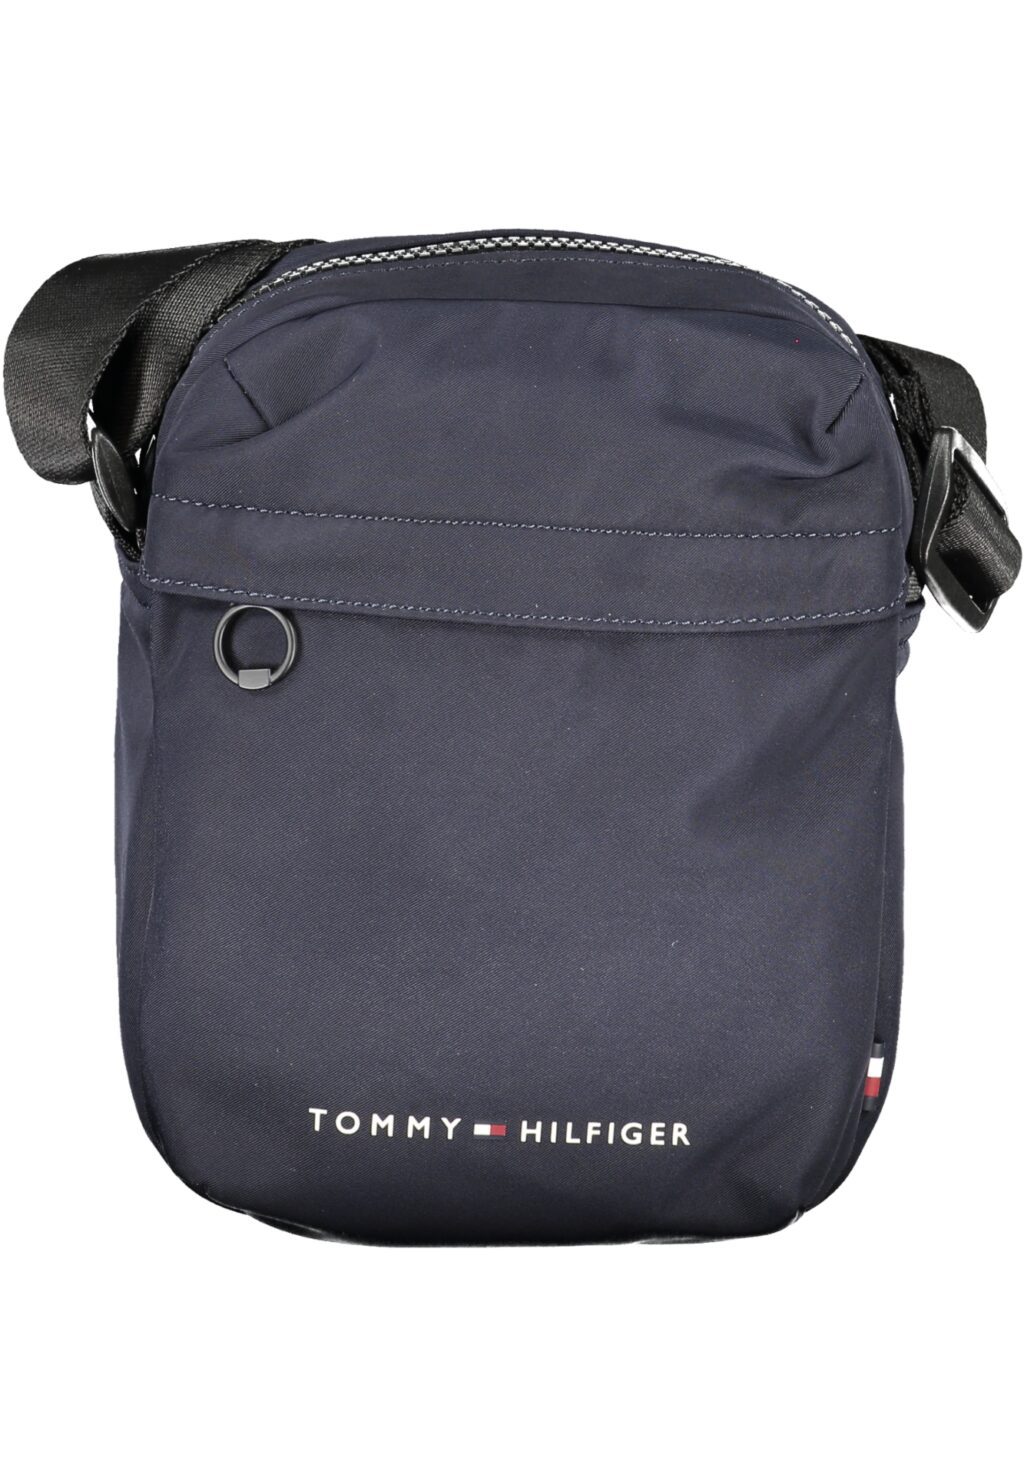 TOMMY HILFIGER MEN'S BLUE SHOULDER BAG AM0AM11790_BLDW6